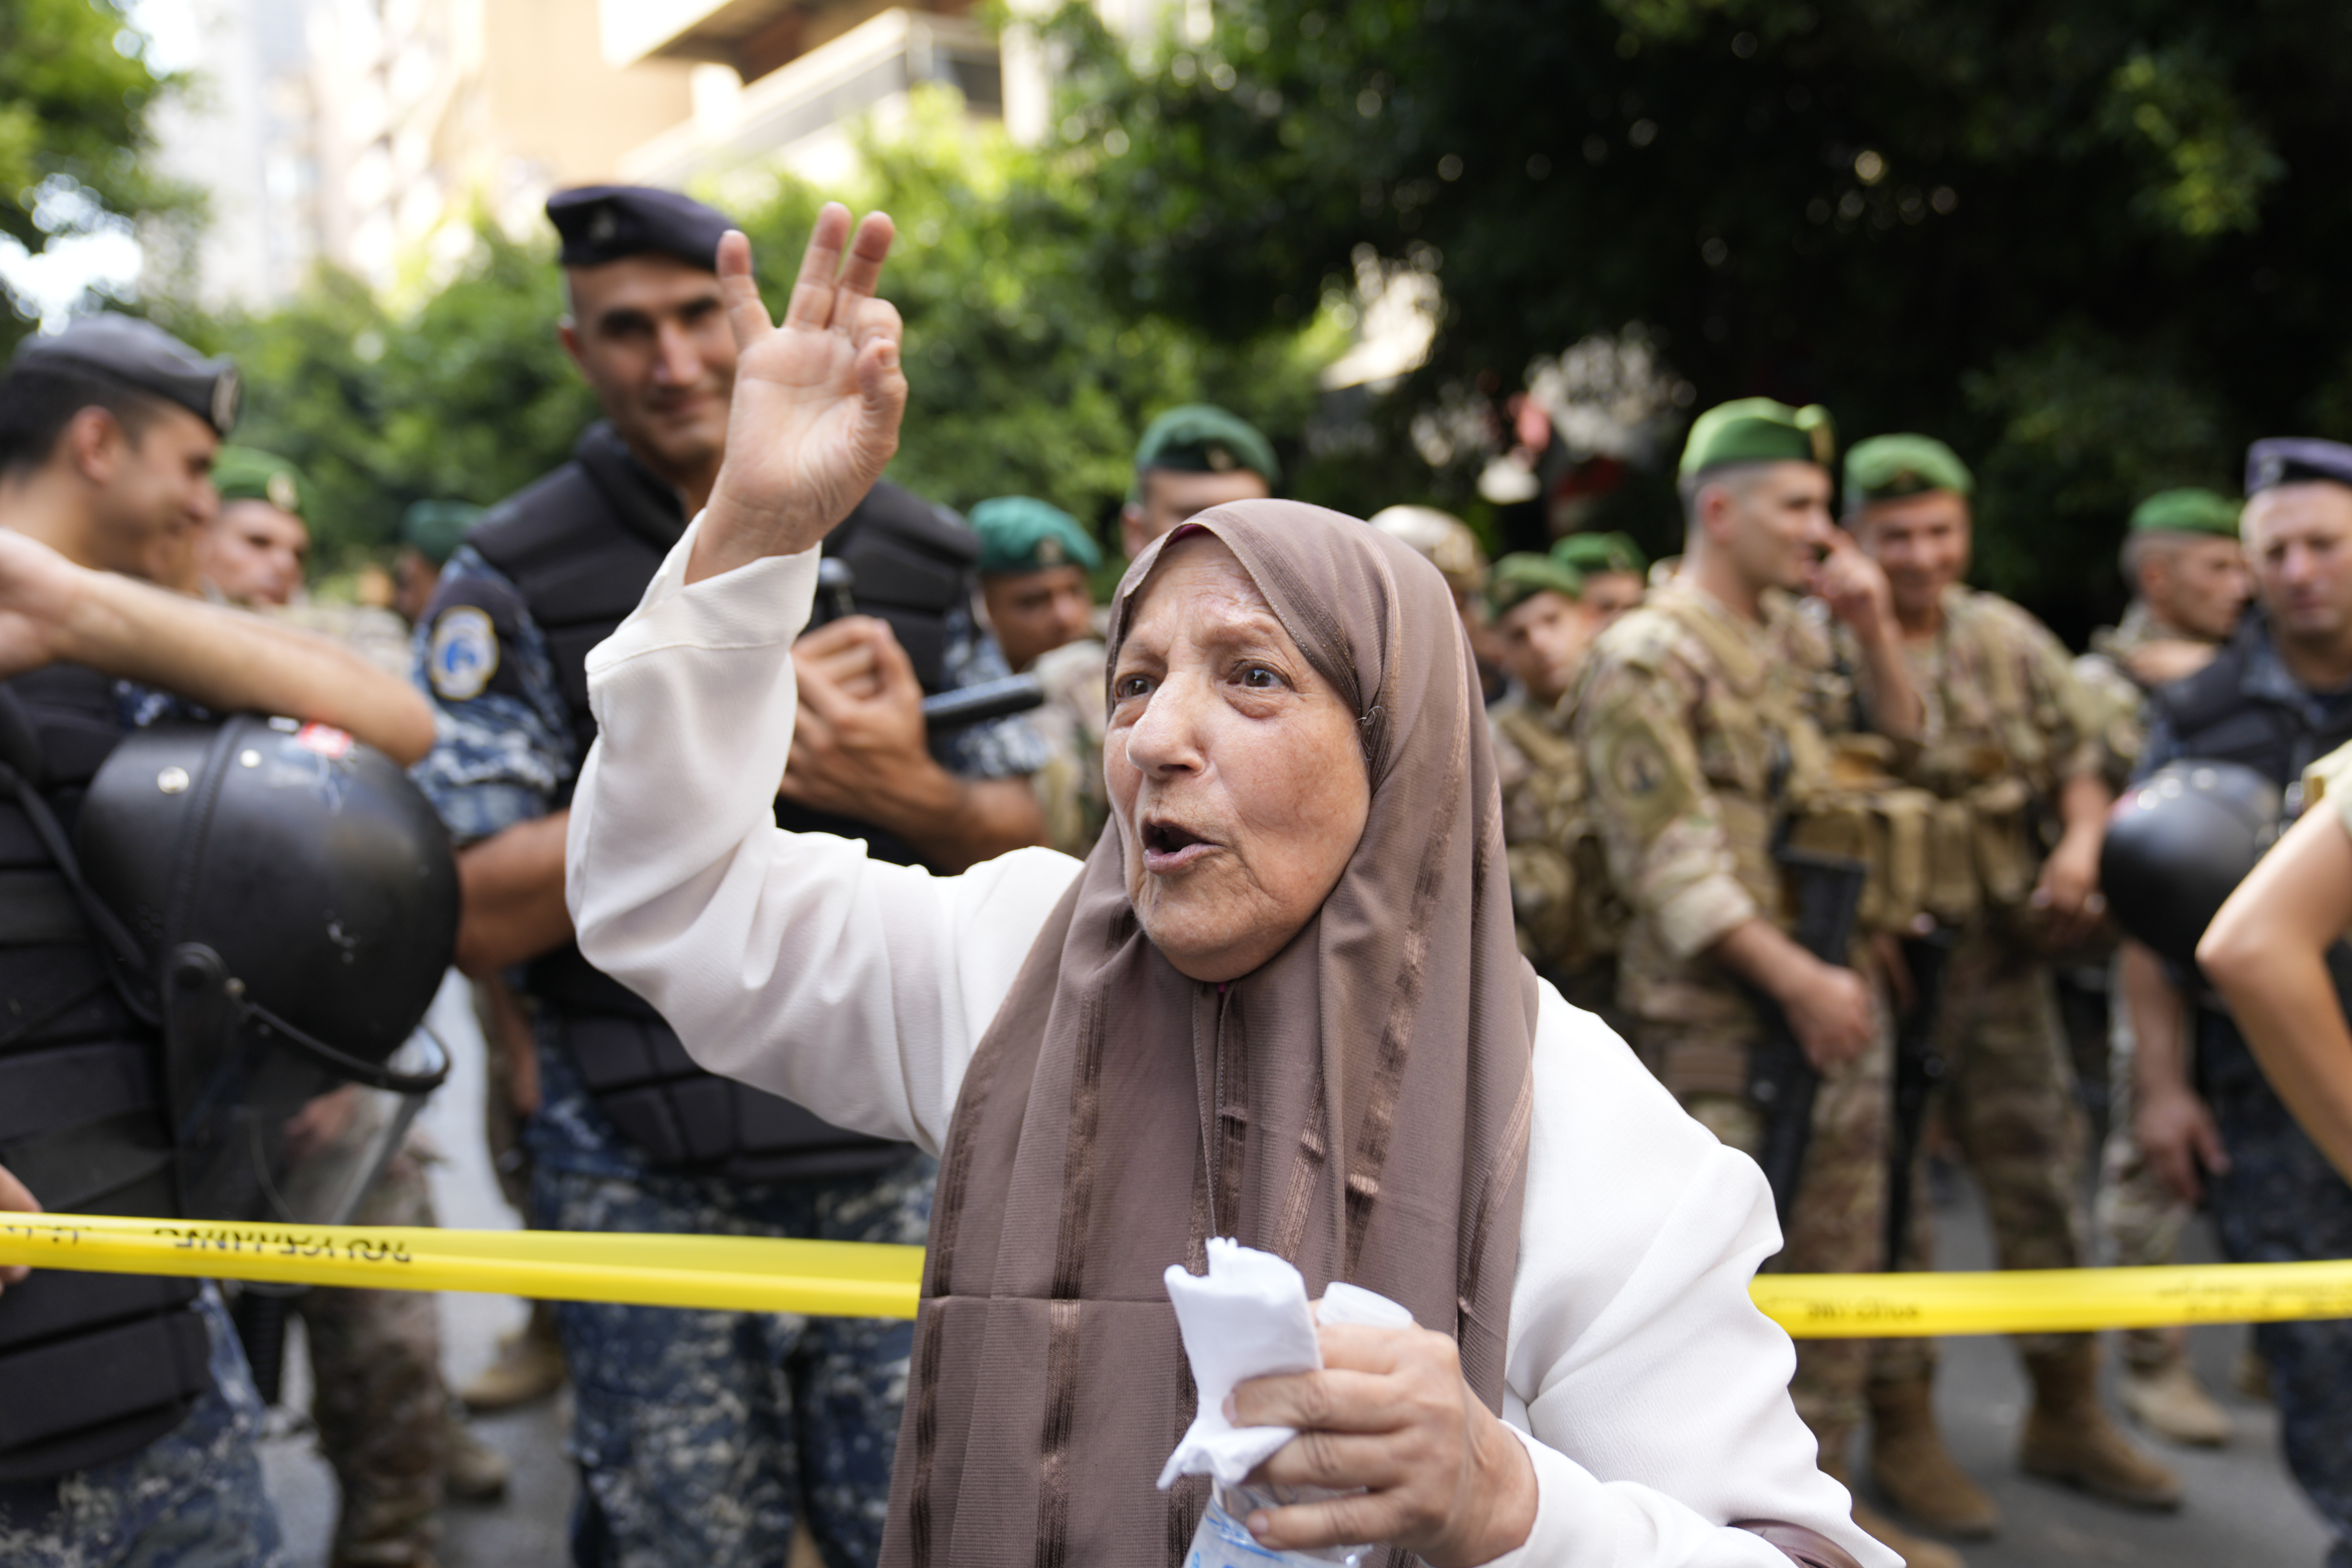 Pengunjuk rasa berkumpul mendukung pelaku penyanderaan. Foto: AP Photo/Hussein Malla